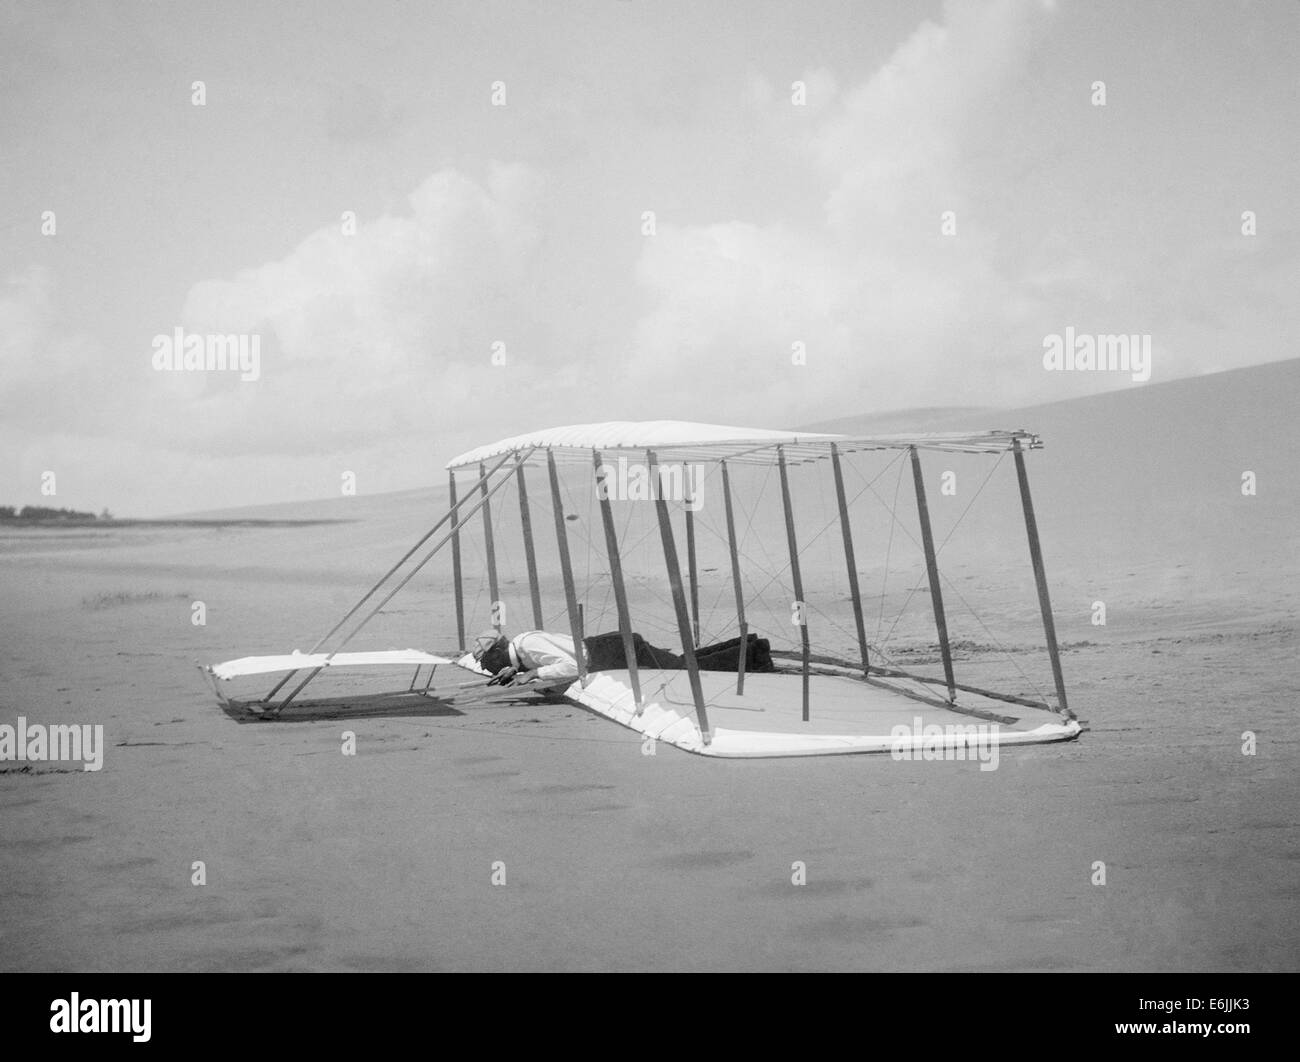 Wilbur Wright dopo le operazioni di sbarco non alimentato aliante 1901 dicembre 31, 1900 in Kill Devil Hills, North Carolina. Aliante skid sono visibili dei segni dietro di esso, e i marchi da un precedente landing sono visibili nella parte anteriore. Foto Stock